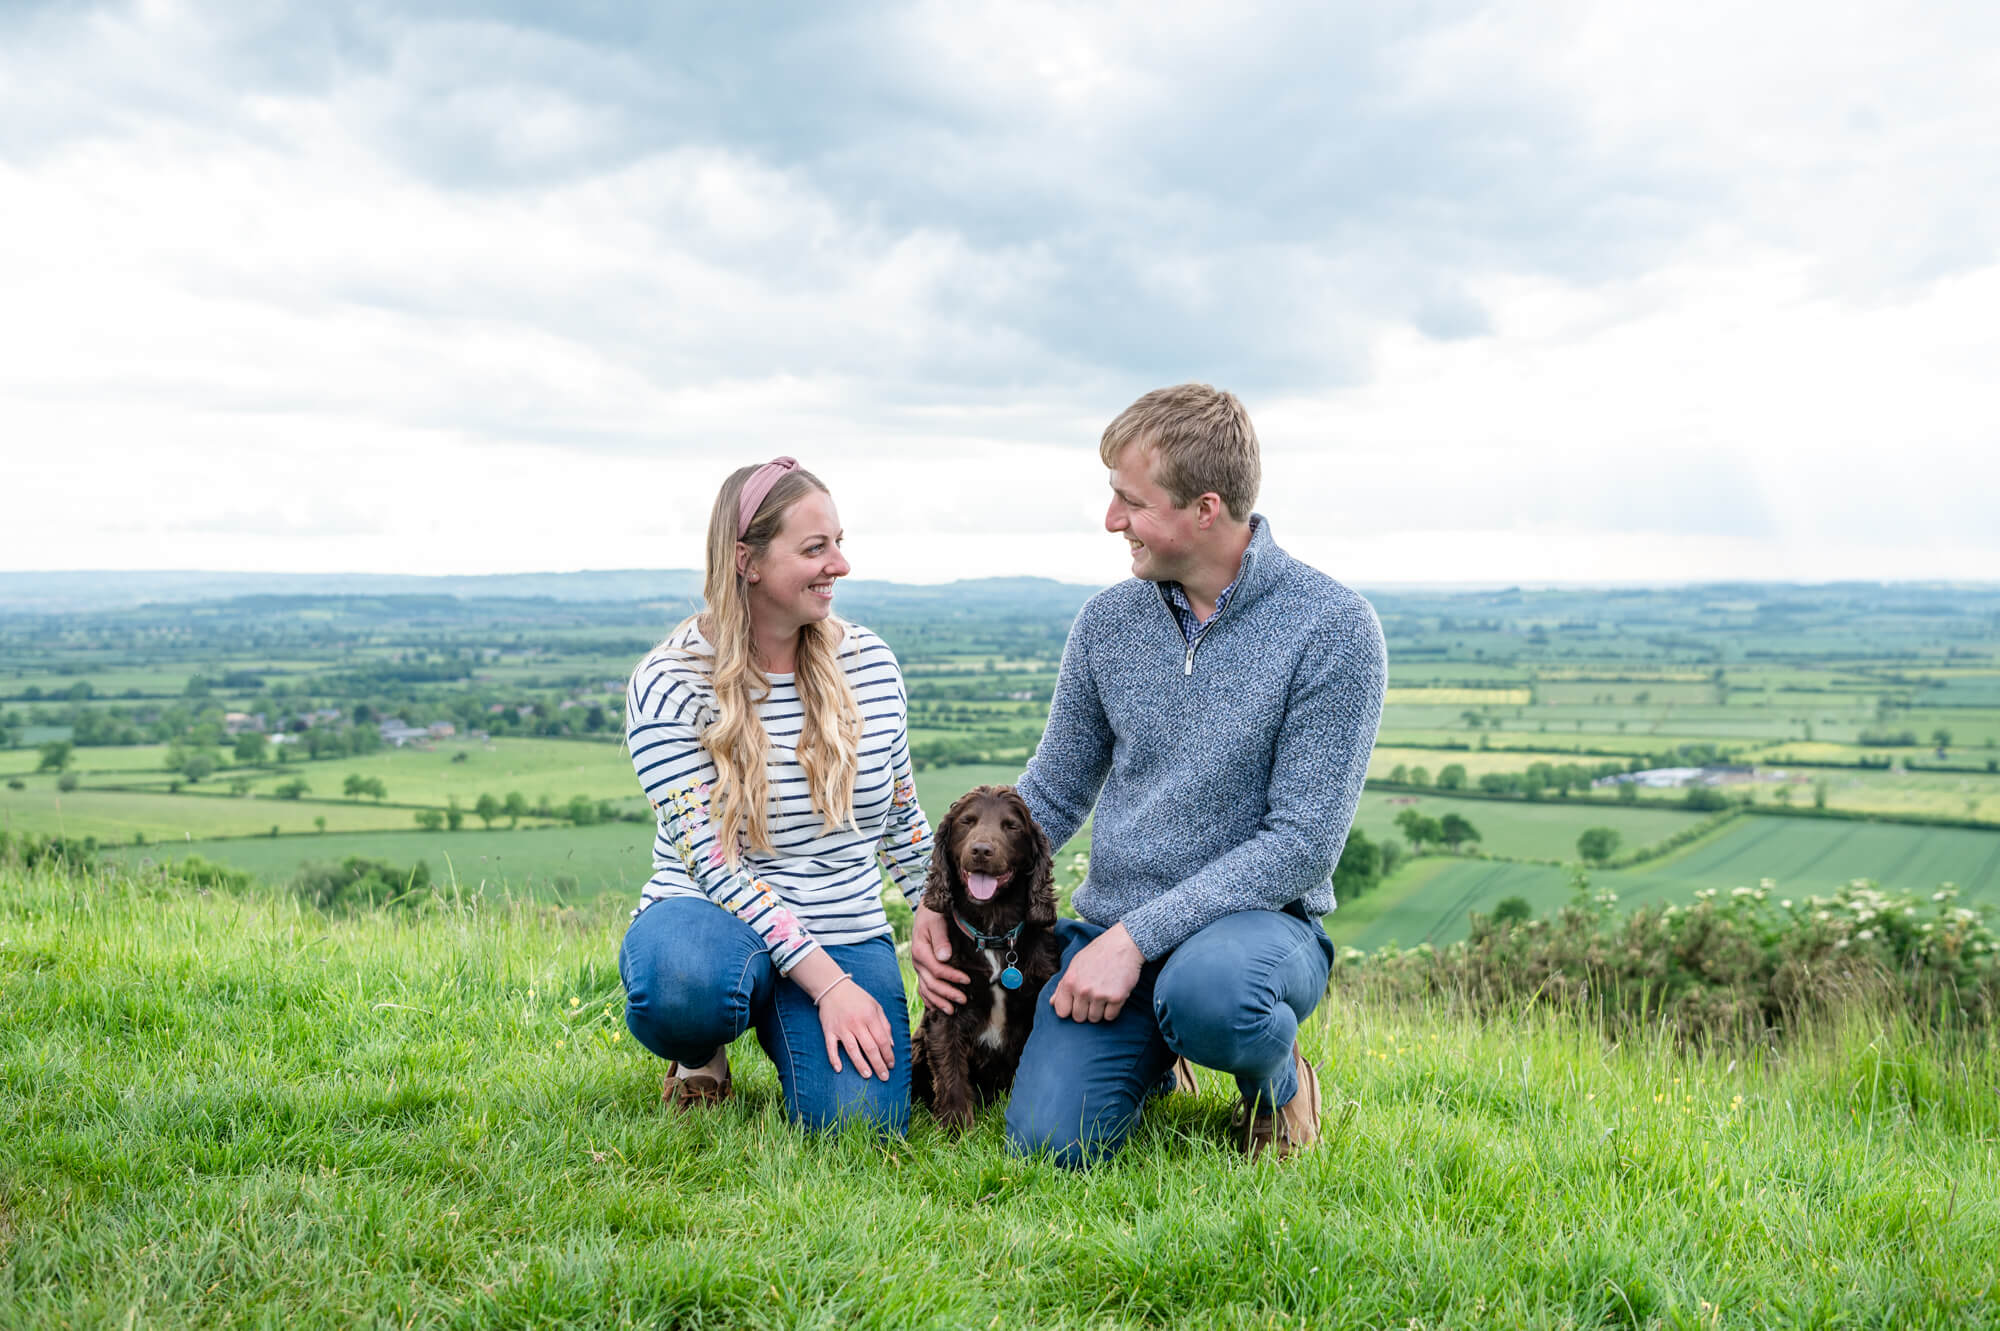 Chloe Bolam UK Engagement and Wedding Photographer - Engagement Photoshoot with a dog